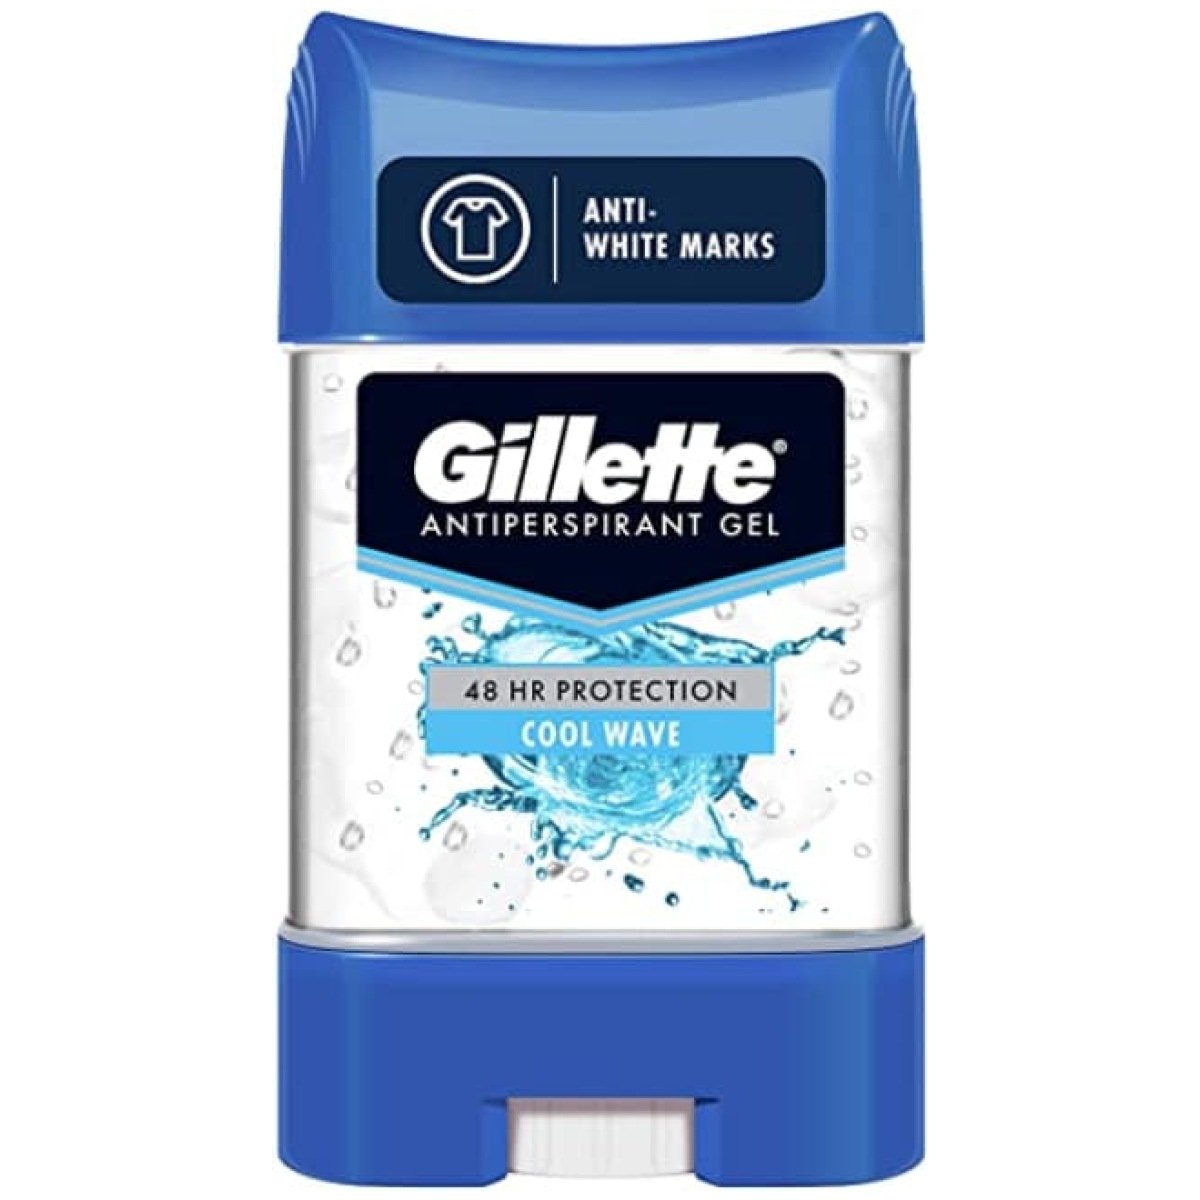 Gillette Antiperspirant Gel Cool Wave